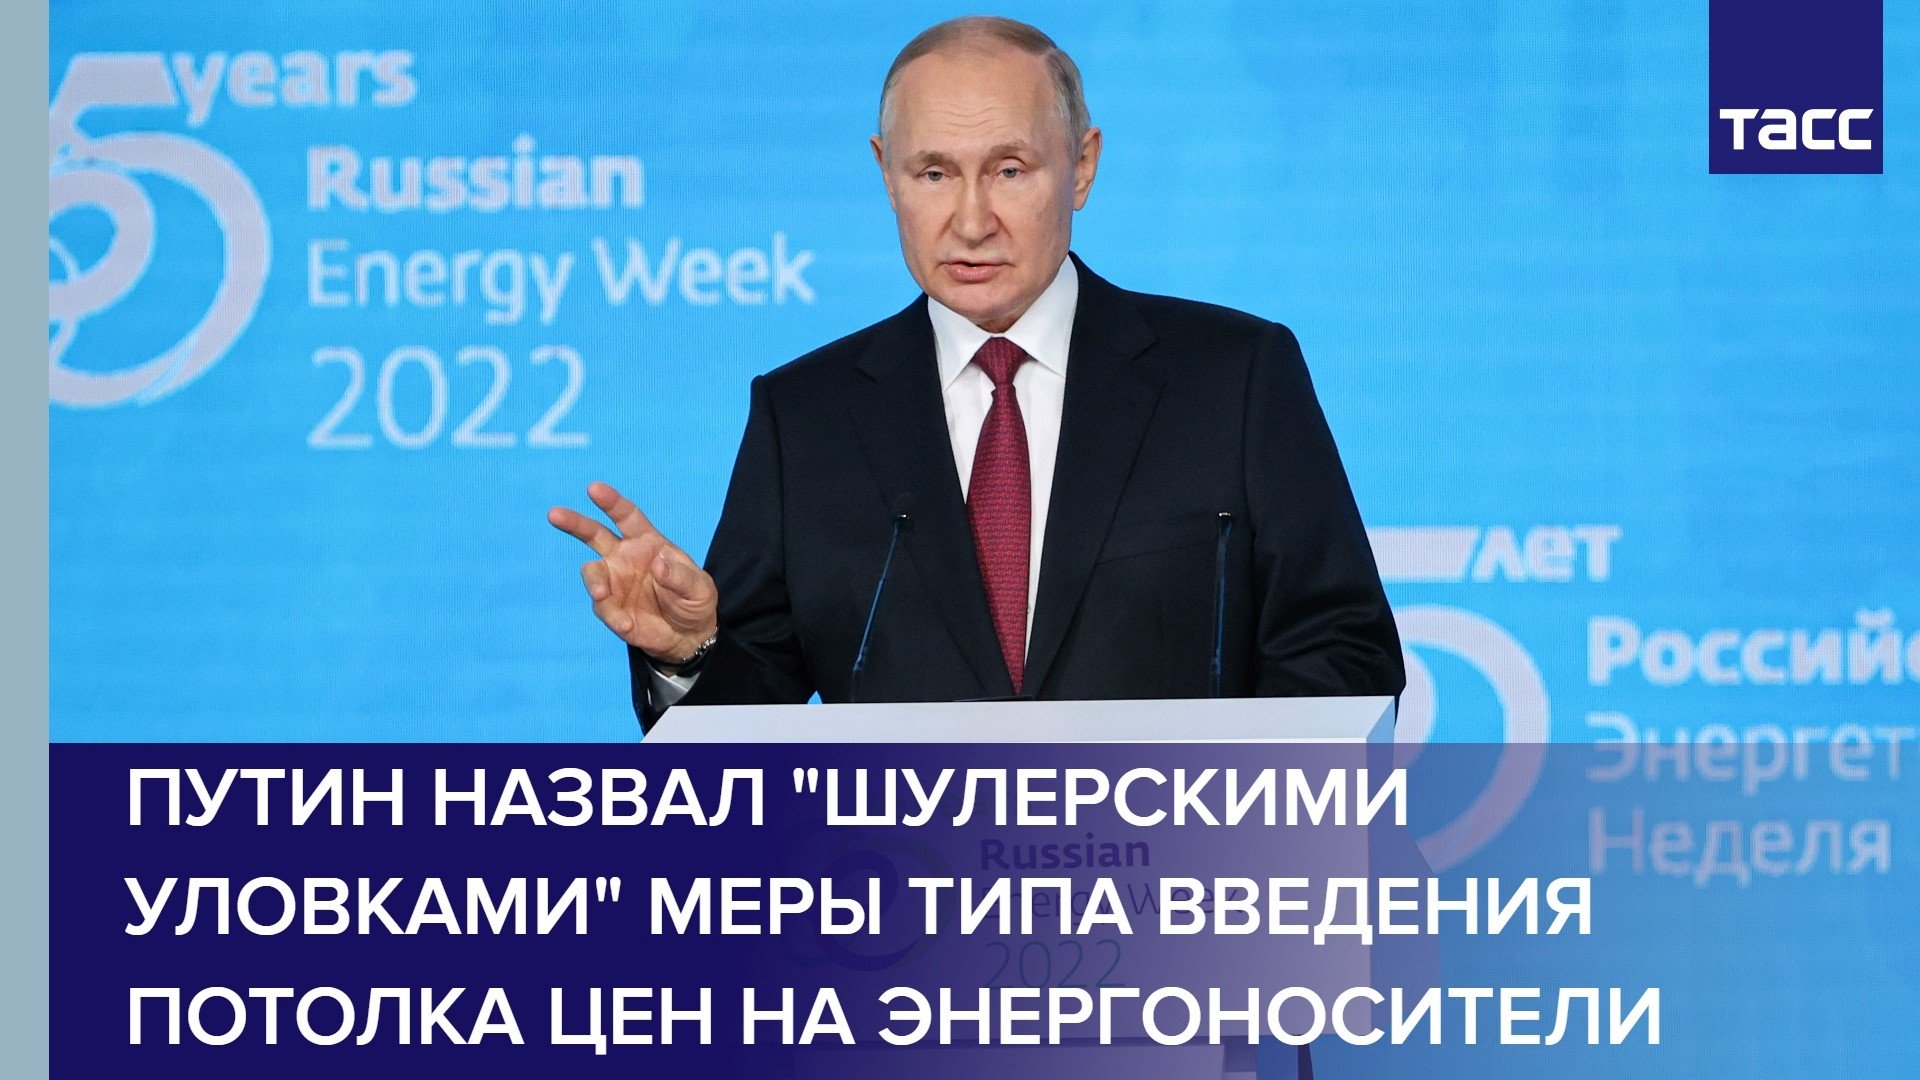 Путин назвал "шулерскими уловками" меры типа введения потолка цен на энергоносители #shorts